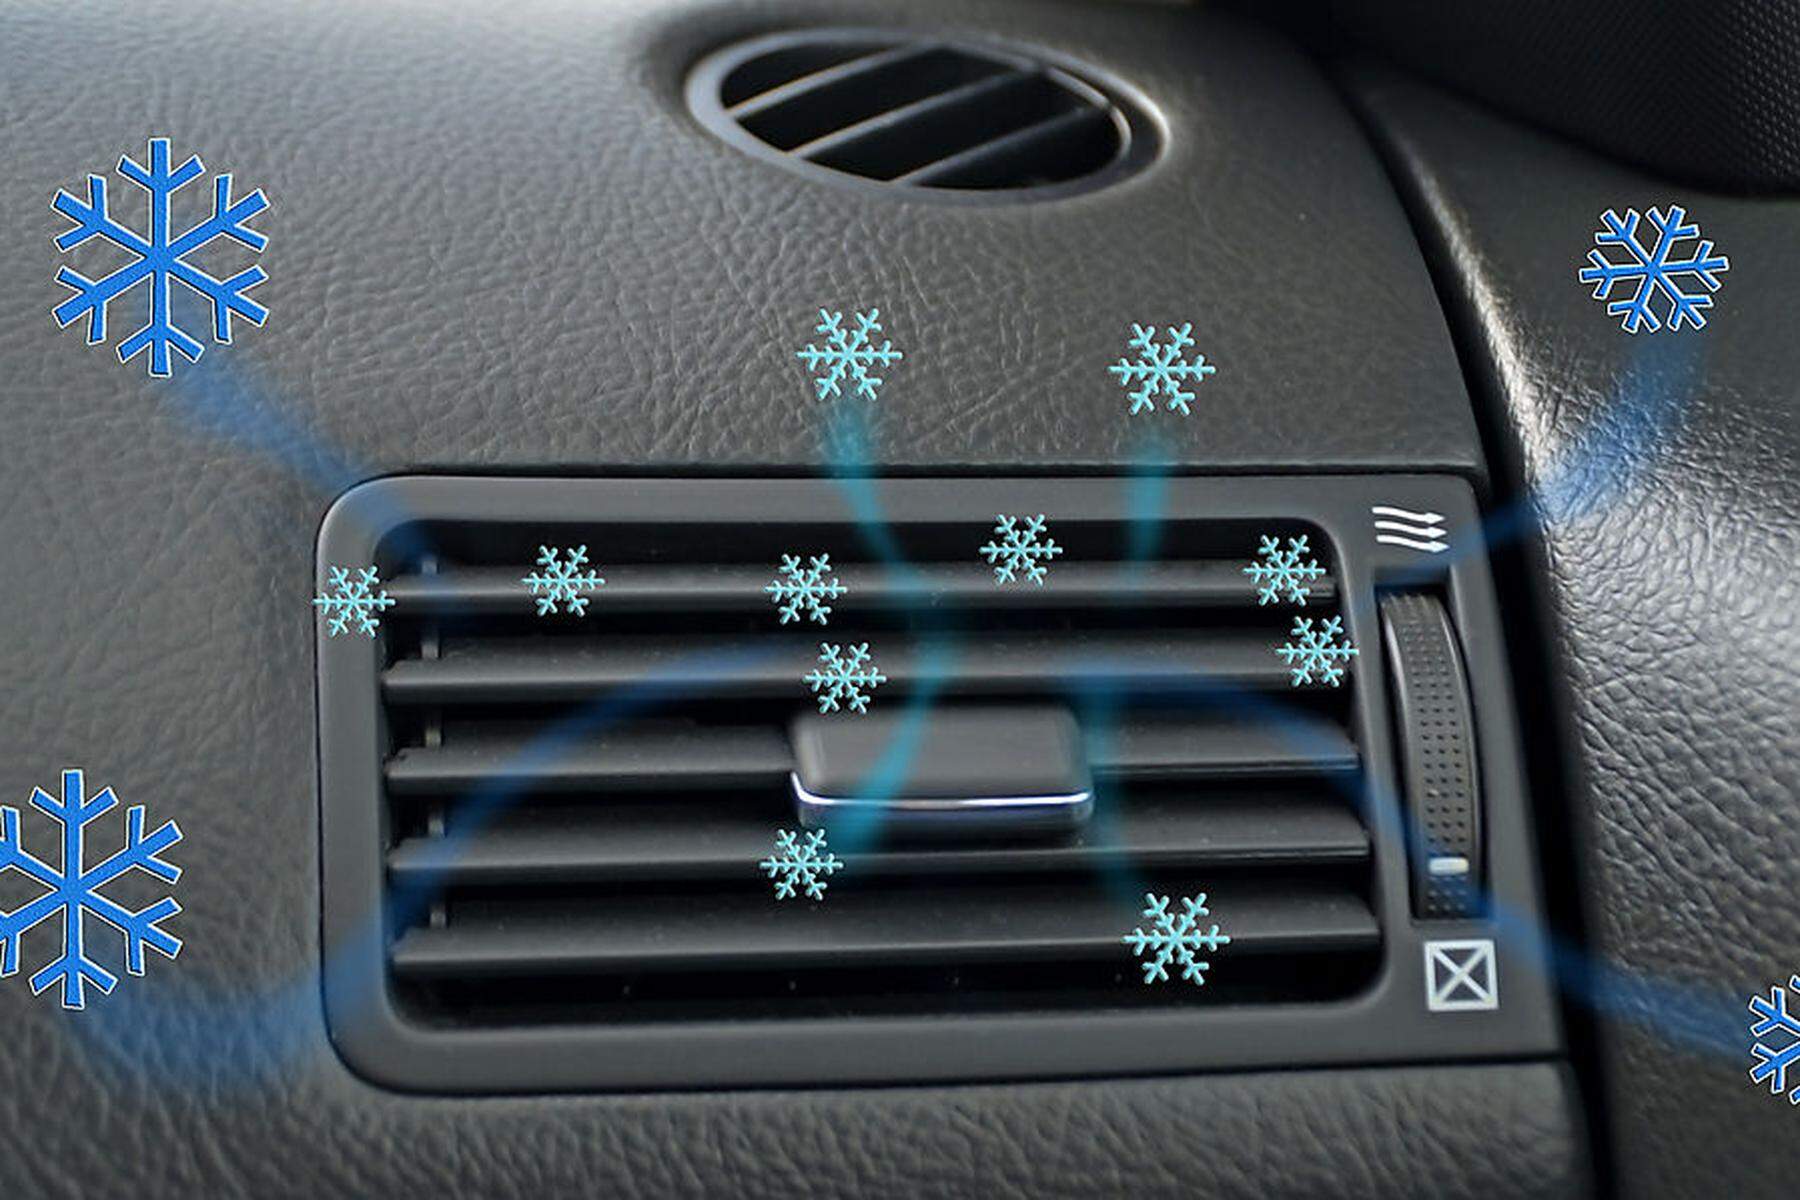 Auto-Klimaanlage im Winter richtig nutzen